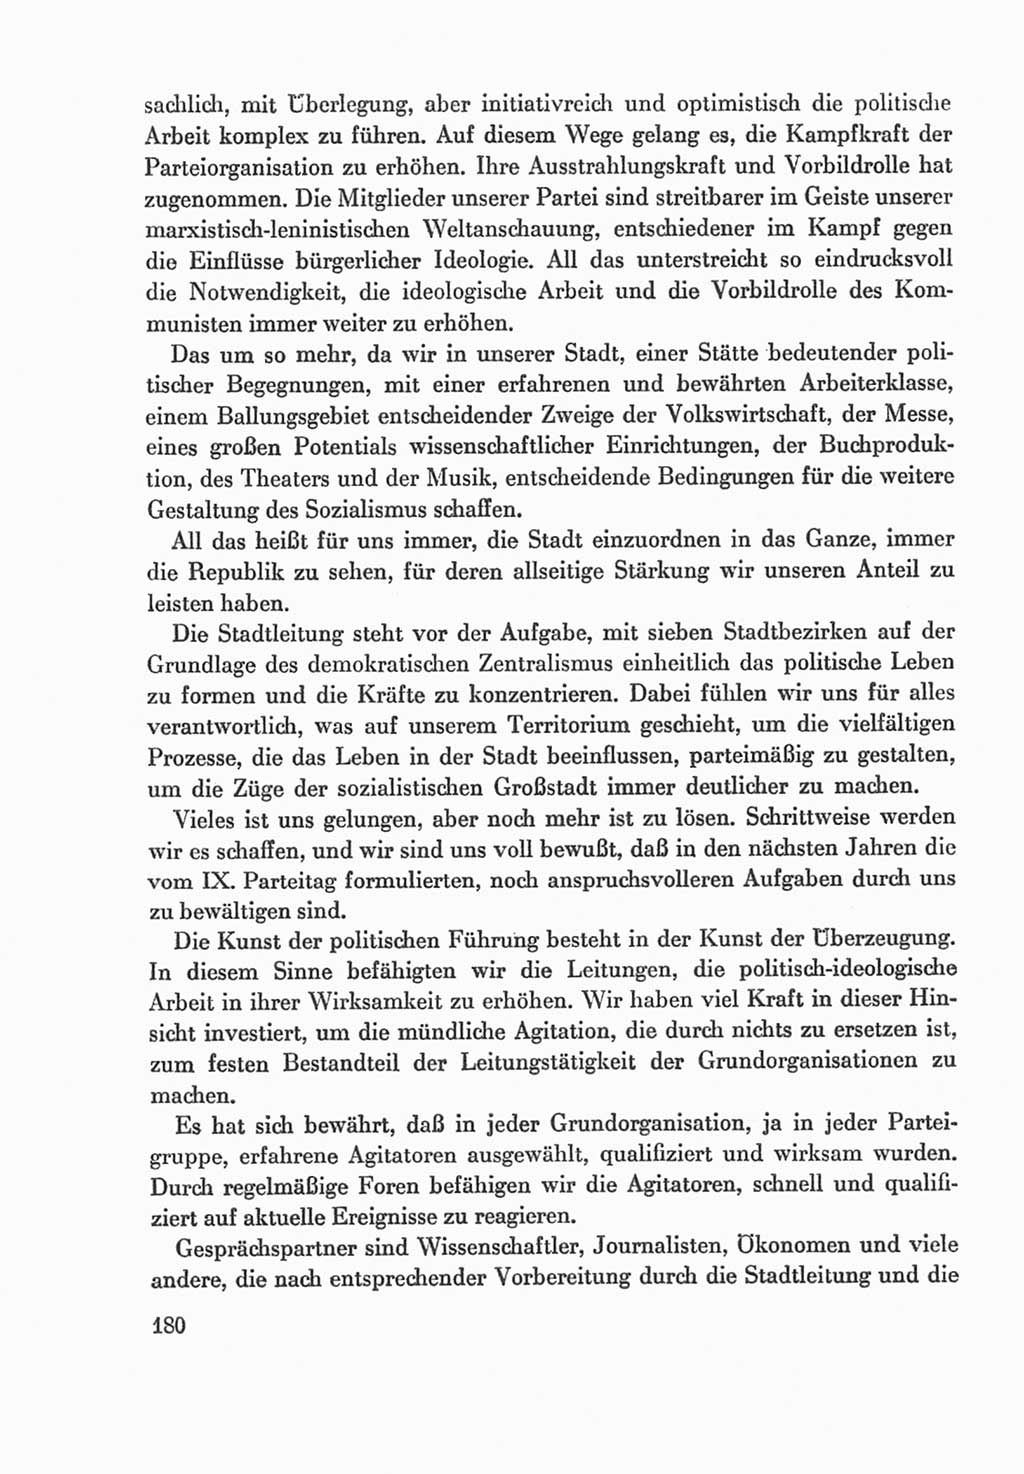 Protokoll der Verhandlungen des Ⅸ. Parteitages der Sozialistischen Einheitspartei Deutschlands (SED) [Deutsche Demokratische Republik (DDR)] 1976, Band 1, Seite 180 (Prot. Verh. Ⅸ. PT SED DDR 1976, Bd. 1, S. 180)